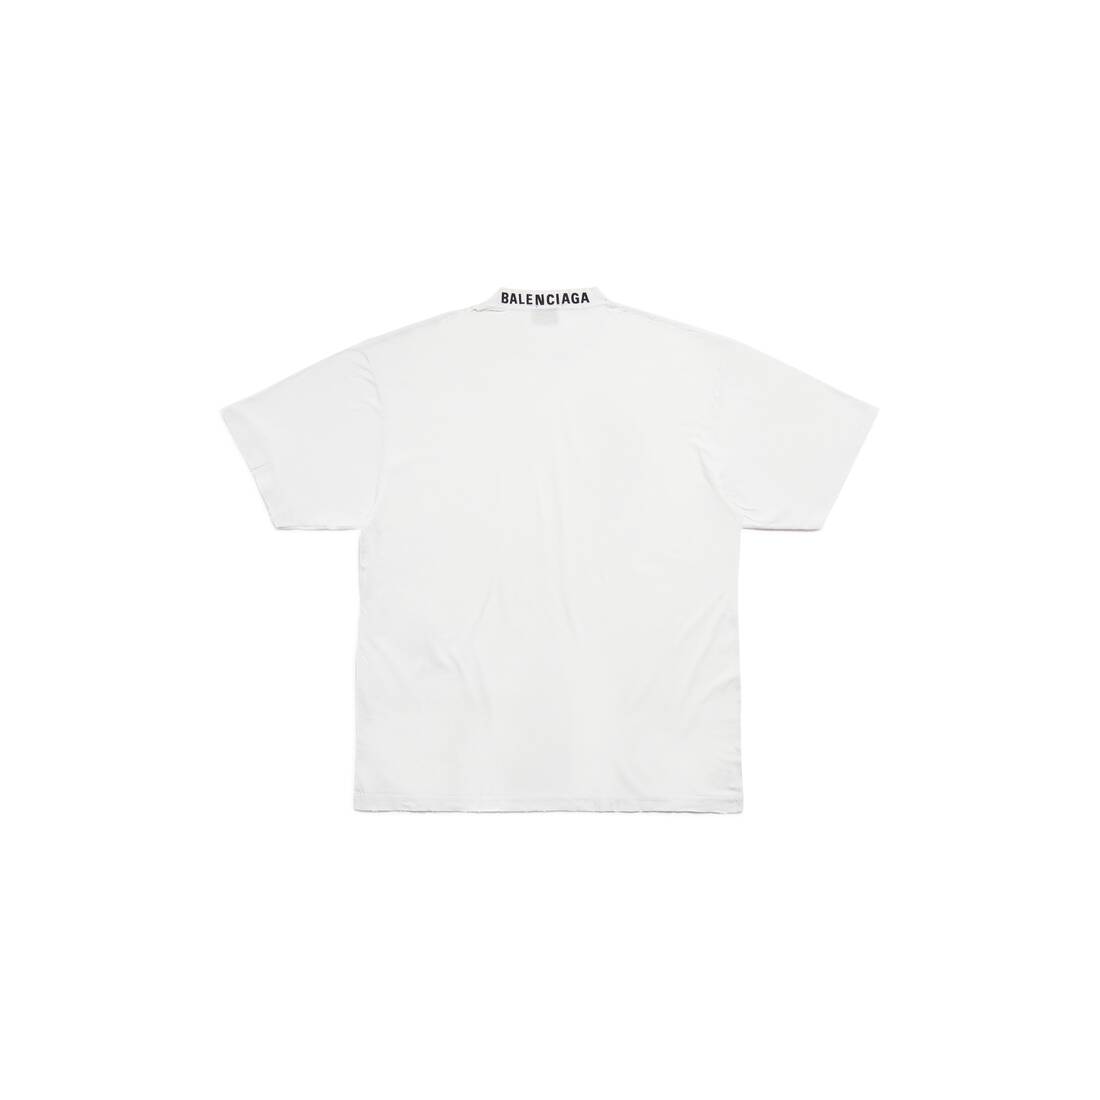 Balenciaga T-shirt Medium Fit in White | Balenciaga US